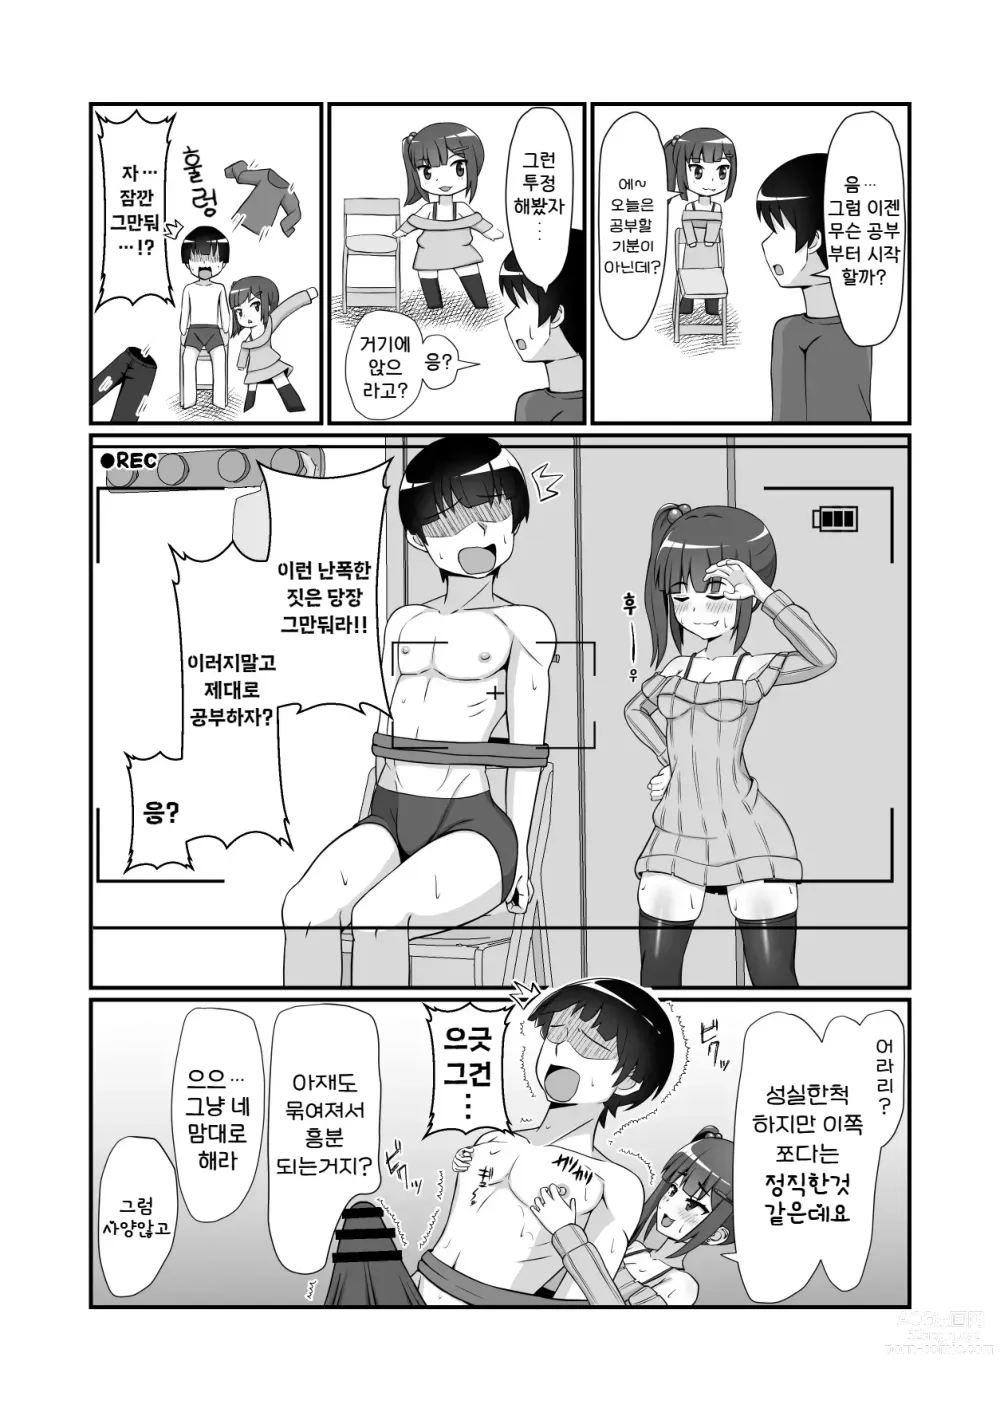 Page 6 of doujinshi 삼백안의 암컷 꼬마한테 제멋 대 로 범해지는 이야기